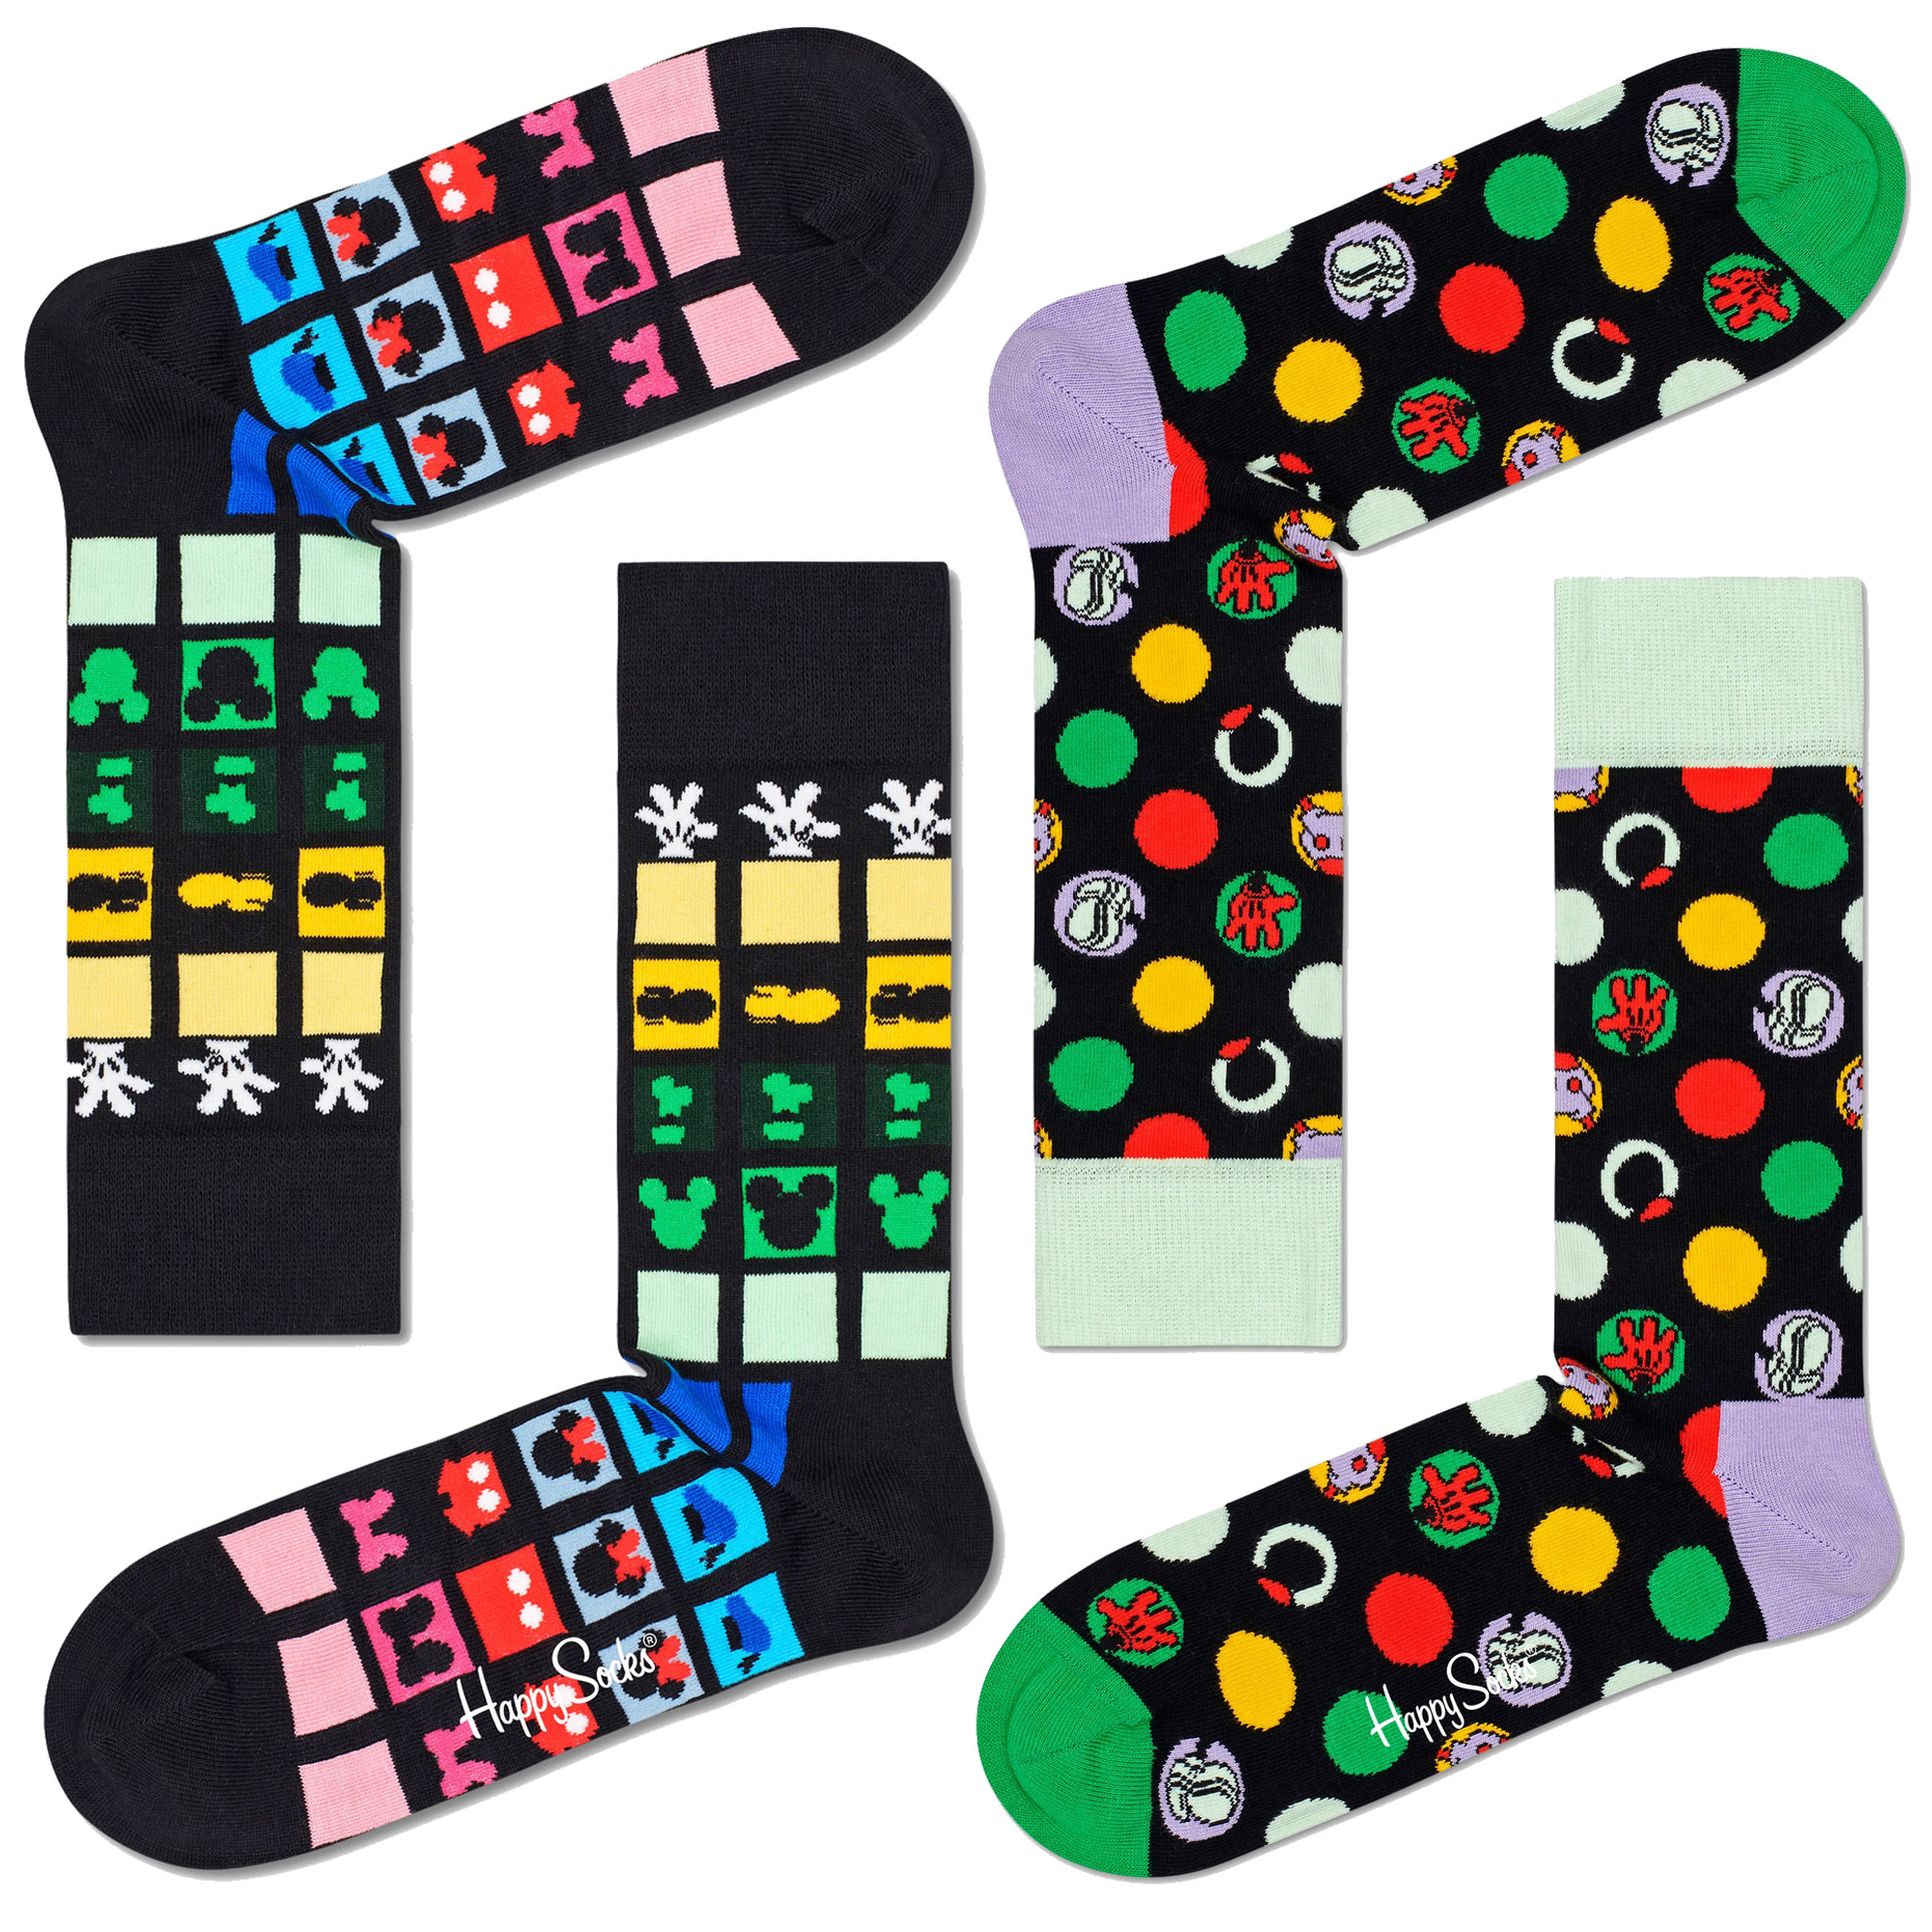 Pack 2 Pares De Calcetines Happy Socks Logos Disney - multicolor - 